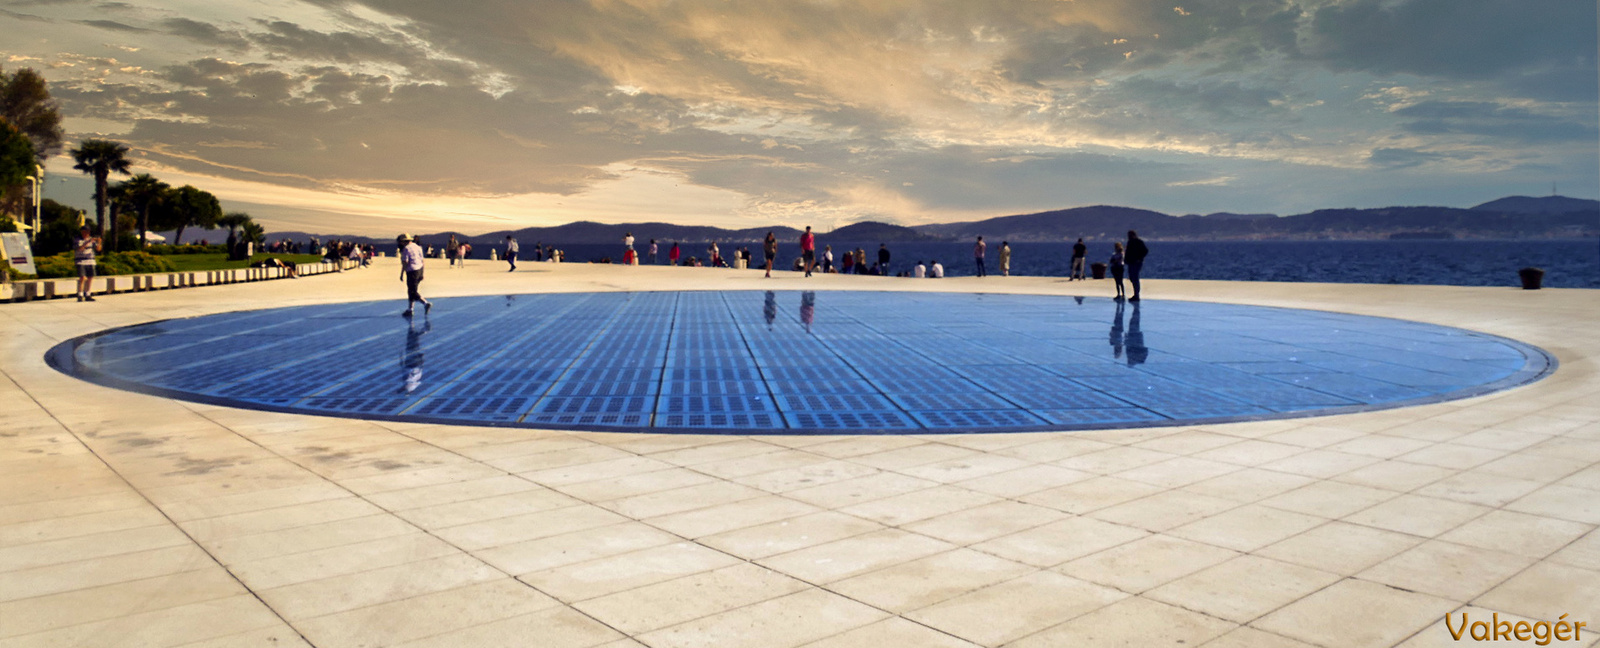 Zadar - A nap köszöntéee - 300 napelemből